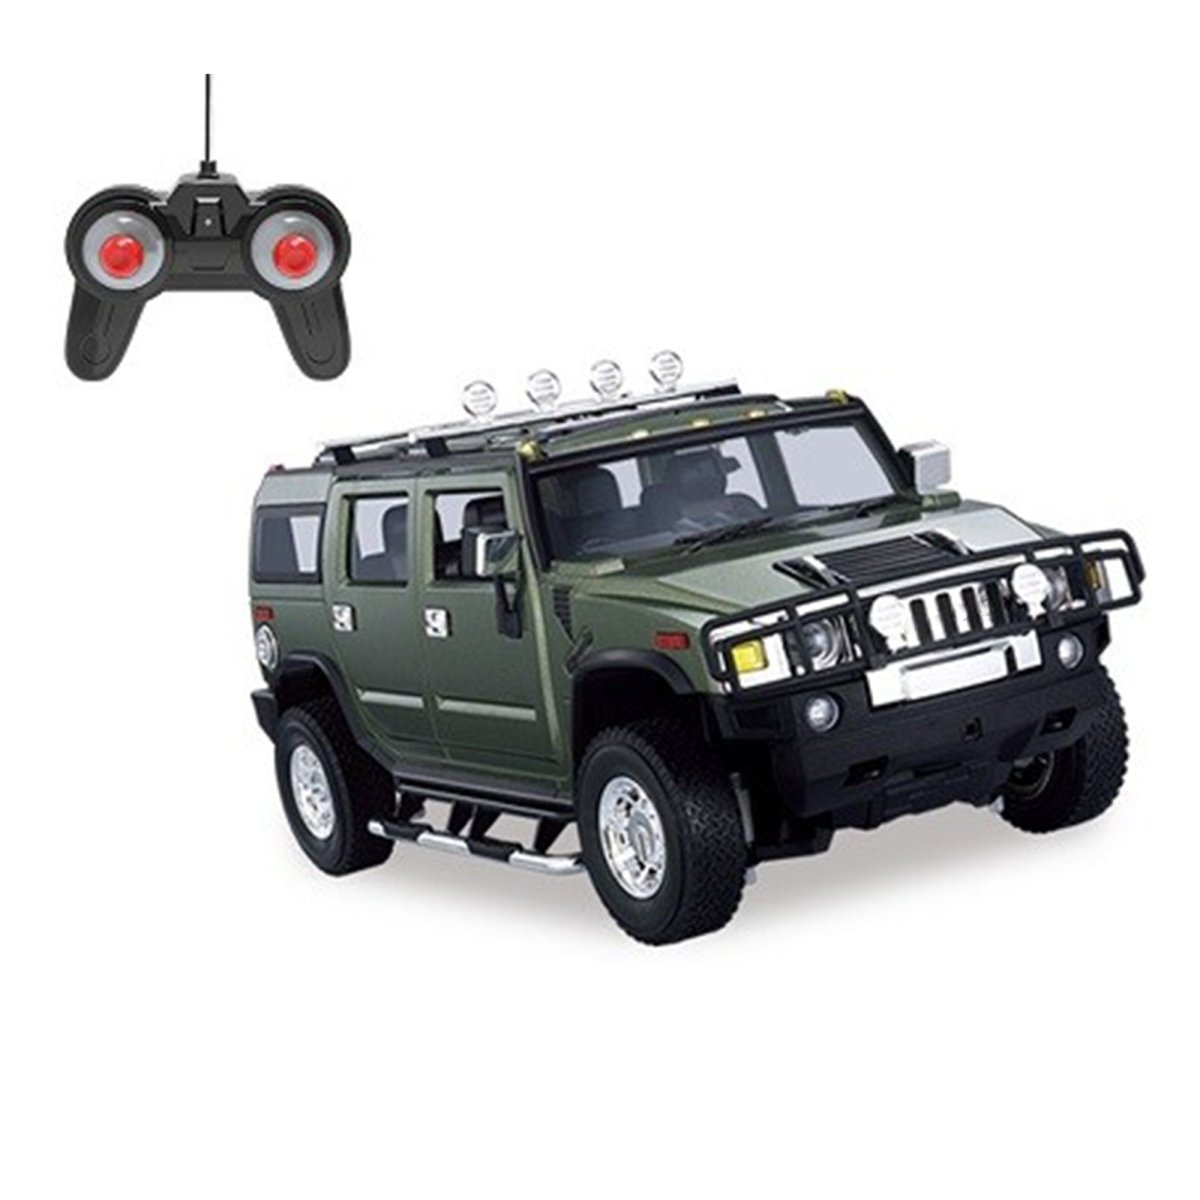 Playzu Remote Control Car Series, Army Vehicle R/C- Green - 27020-U-G